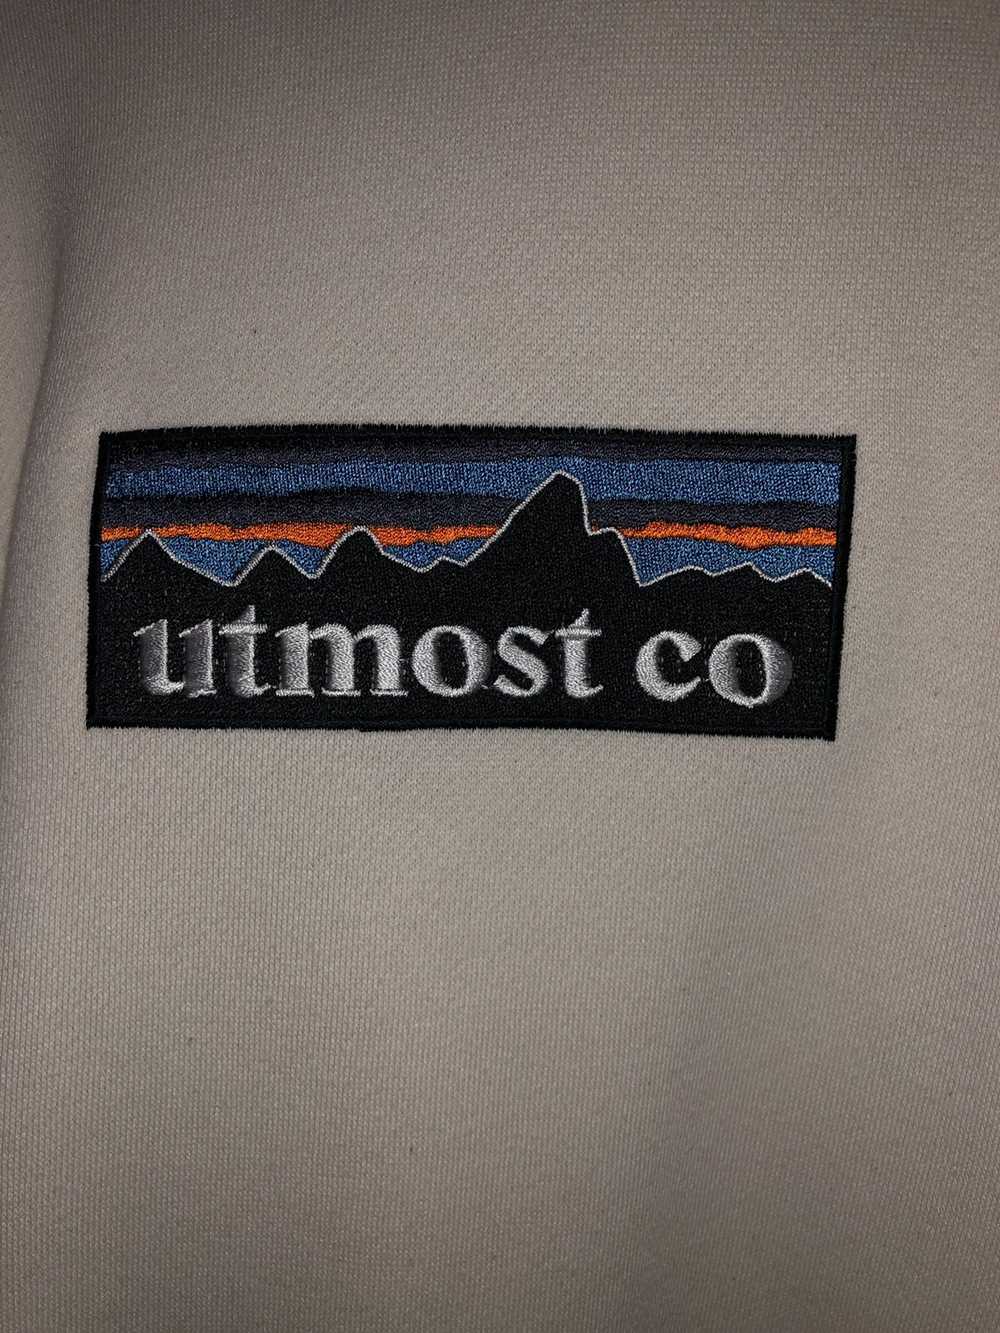 Utmost Co Utmost Patagonia hoodie - image 2